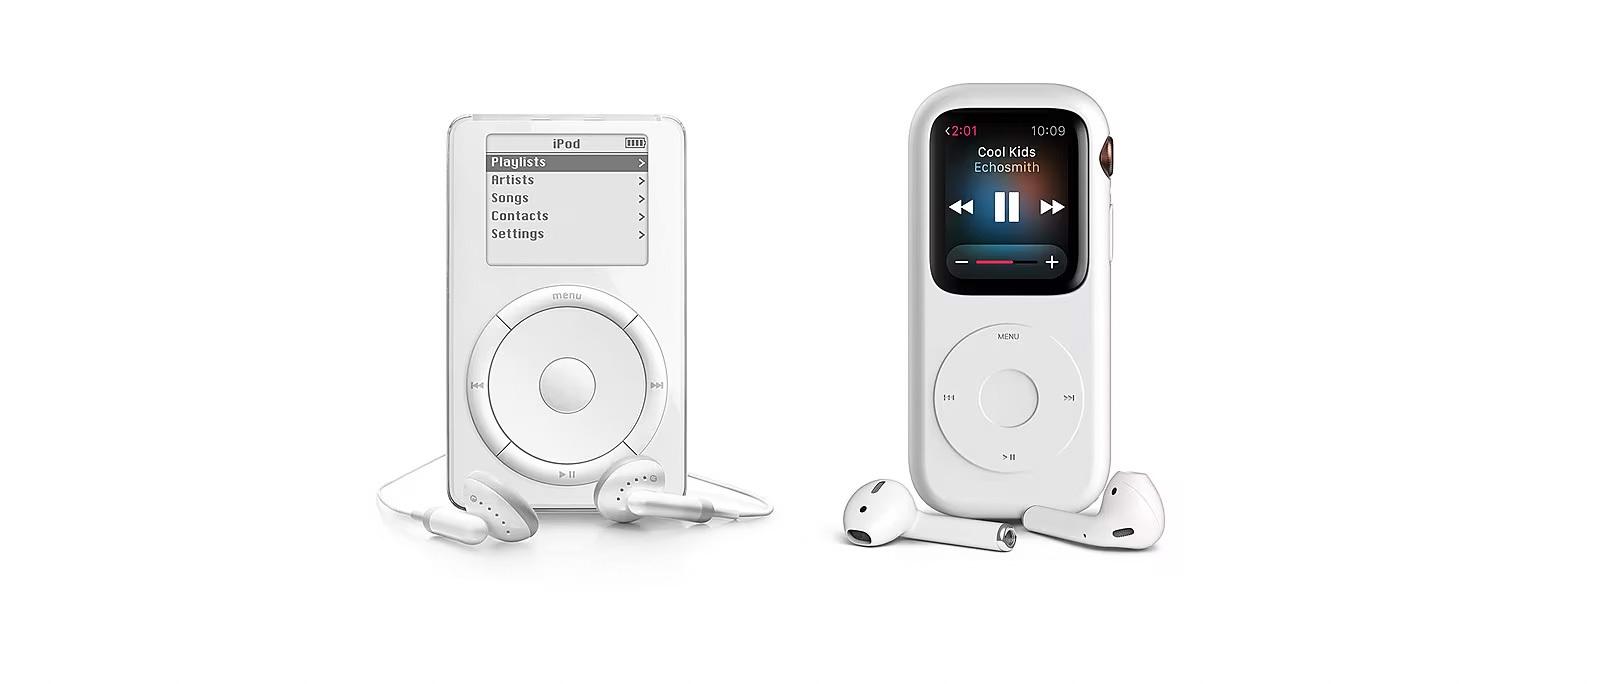 Hodinky od Applu môžete prerobiť na legendárny iPod. Navyše to nie je drahé